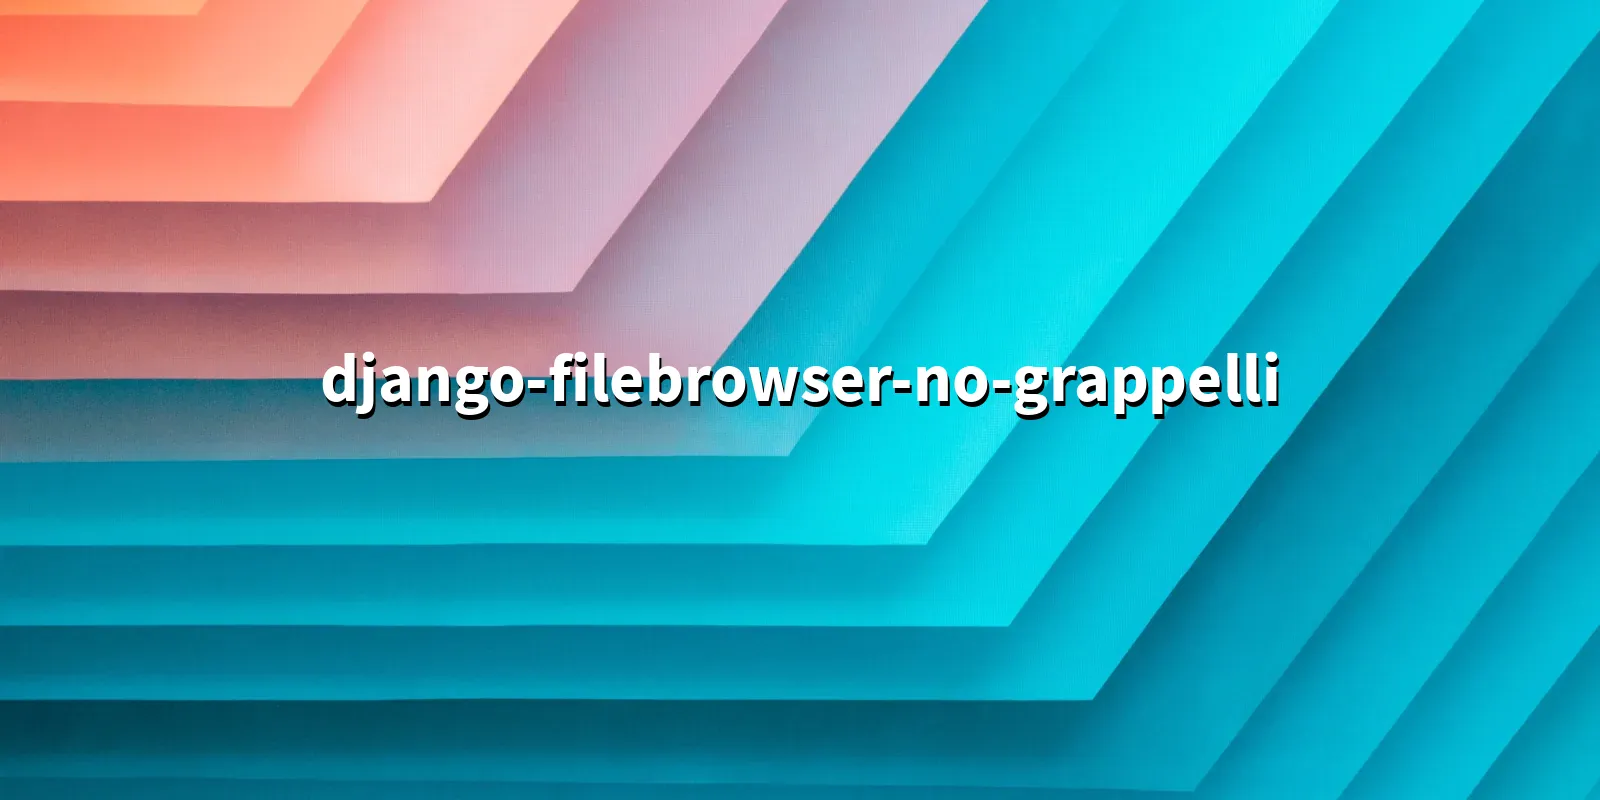 /pkg/d/django-filebrowser-no-grappelli/django-filebrowser-no-grappelli-banner.webp